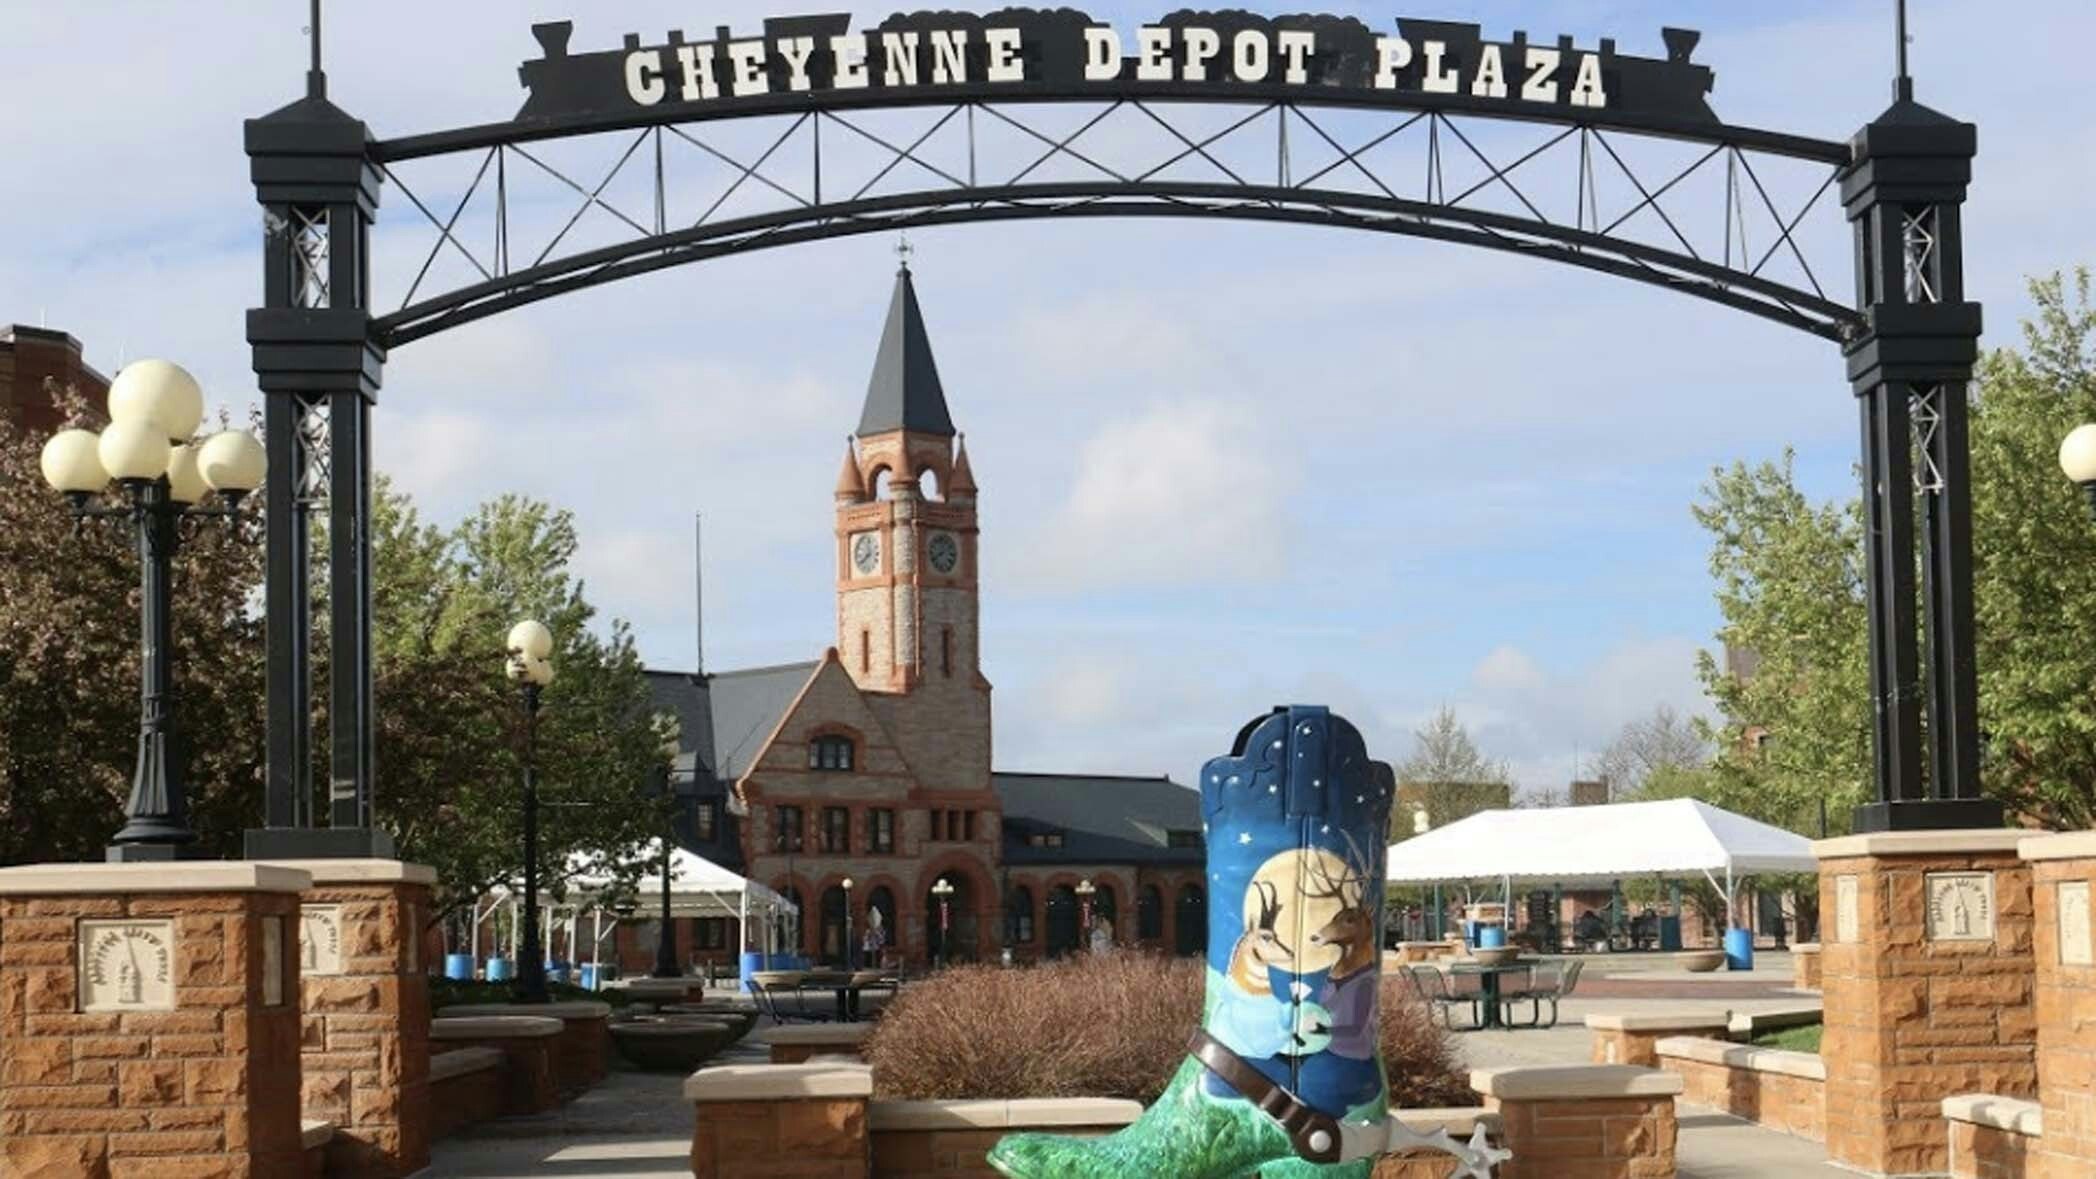 Cheyenne depot